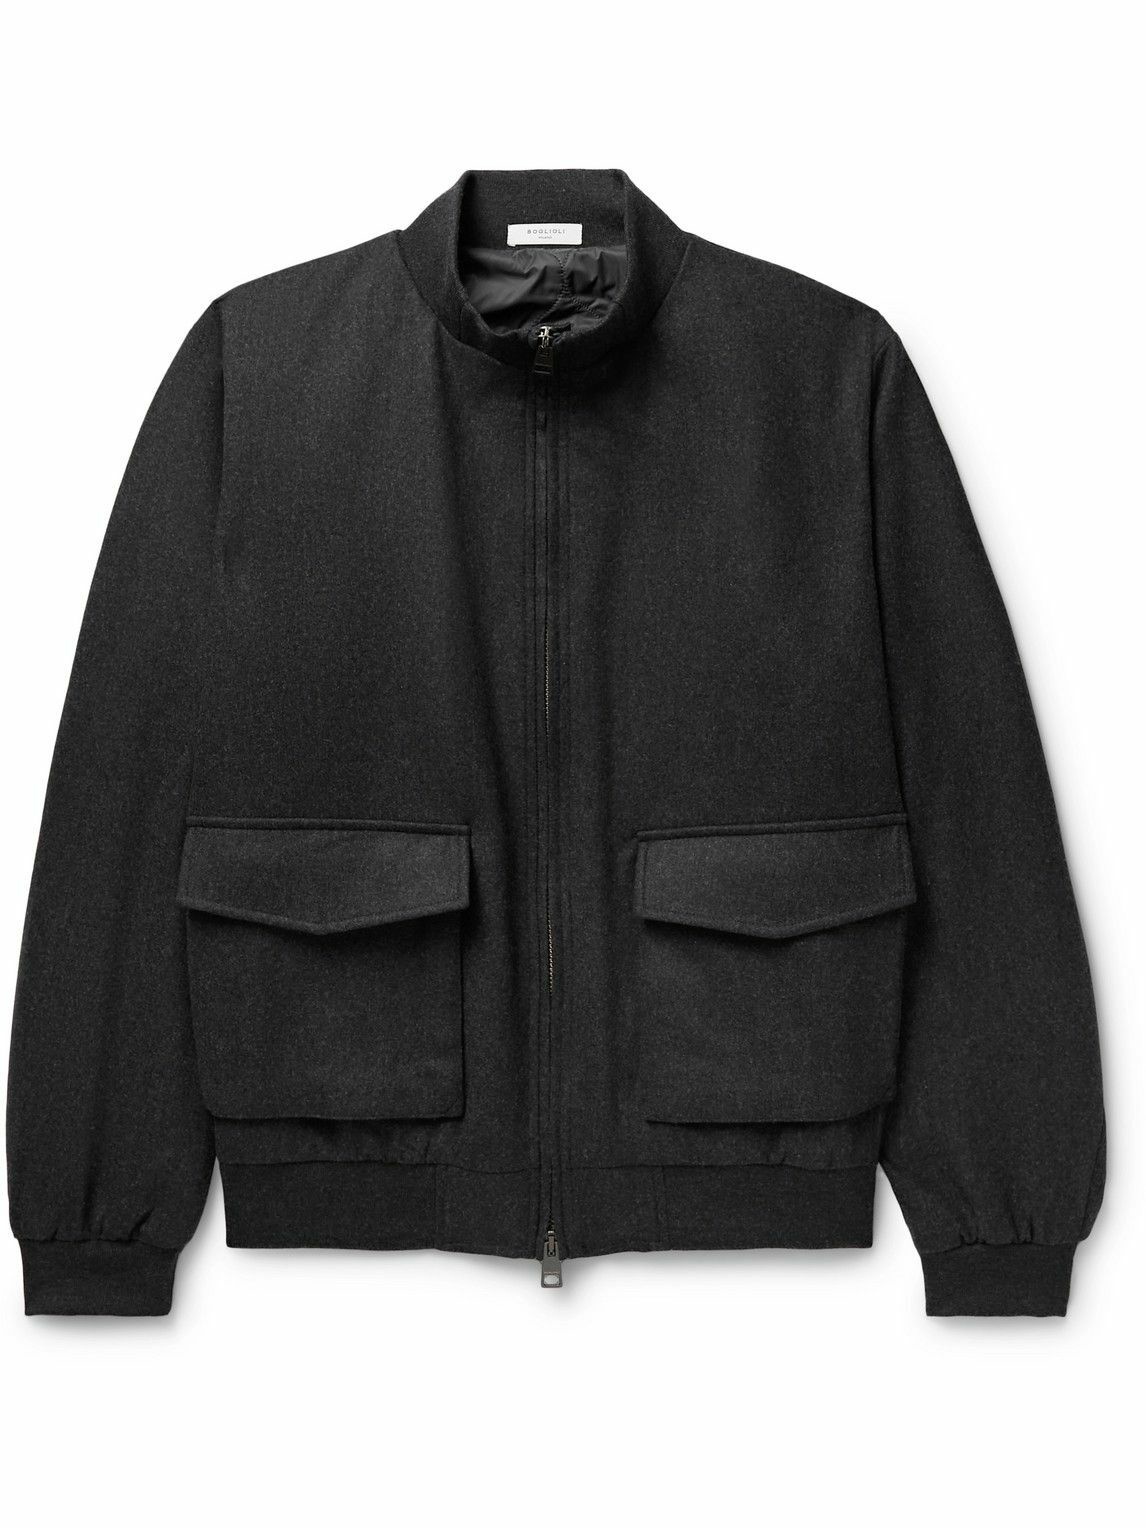 CELINE HOMME Jackson Logo-Appliquéd Wool-Blend Varsity Jacket for